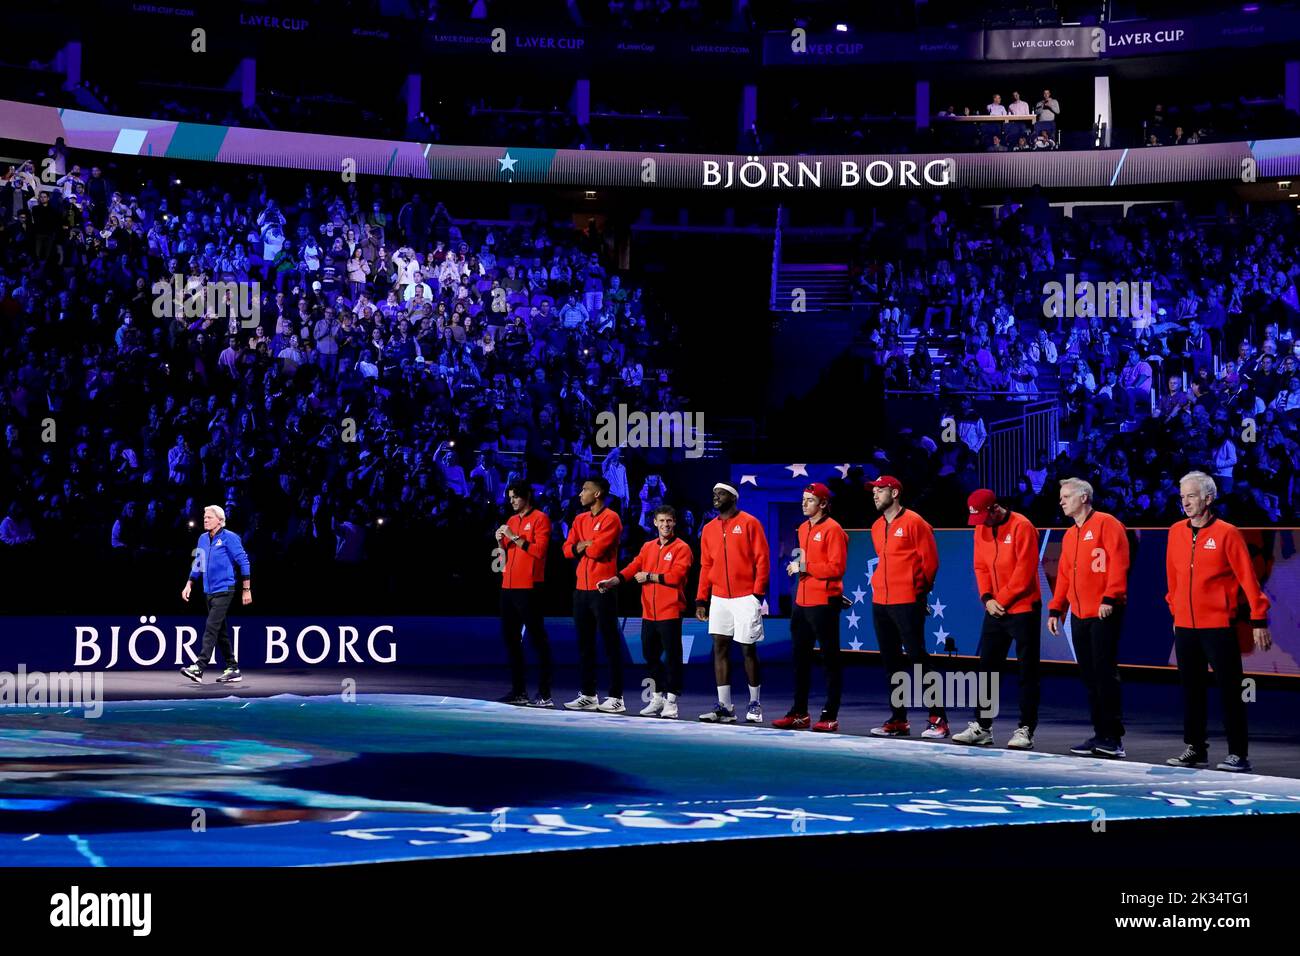 El capitán del equipo europeo Bjorn Borg es presentado a la multitud antes del comienzo del juego de la noche en el segundo día de la Copa Laver en el O2 Arena, Londres. Fecha de la foto: Sábado 24 de septiembre de 2022. Foto de stock